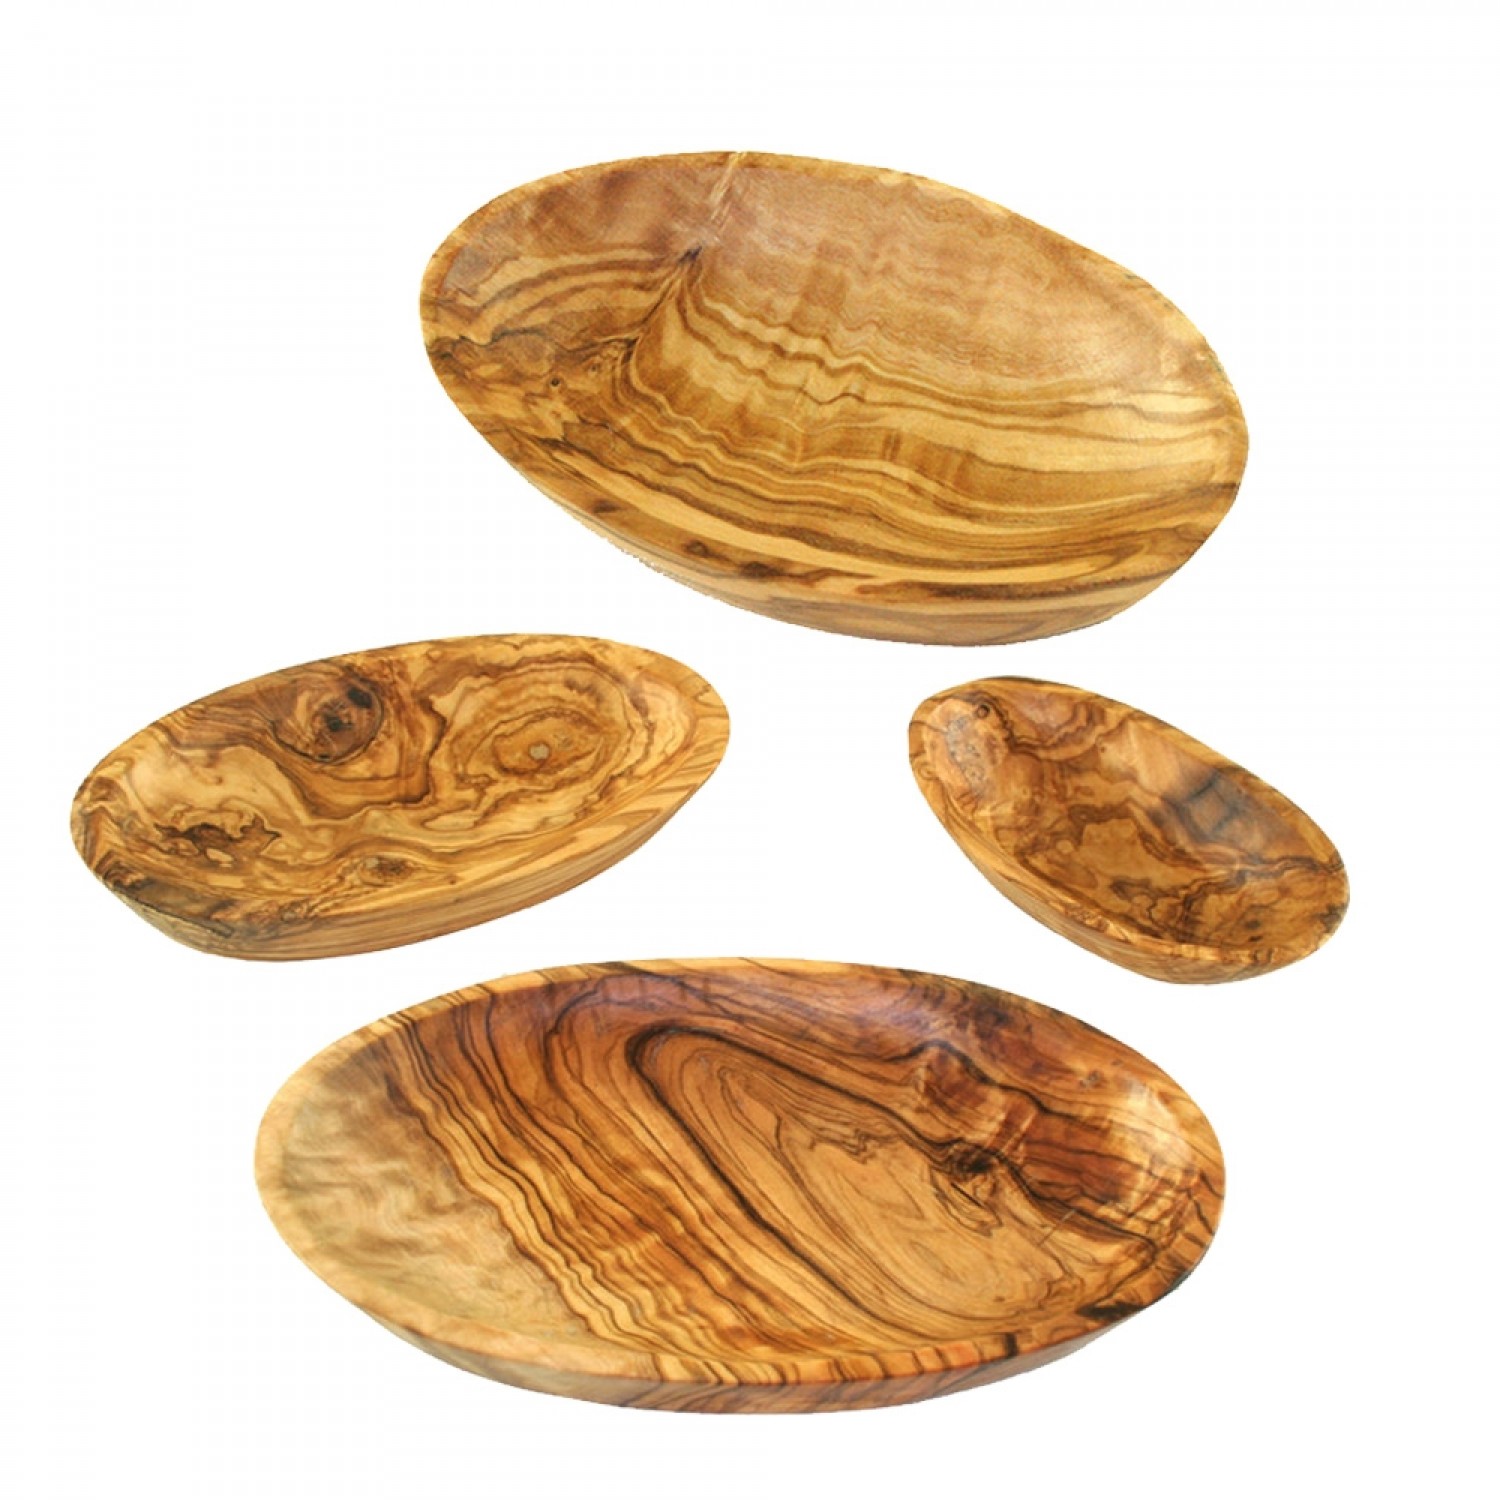 Olive Wood Bowls, oval, various lengths | Olivenholz erleben